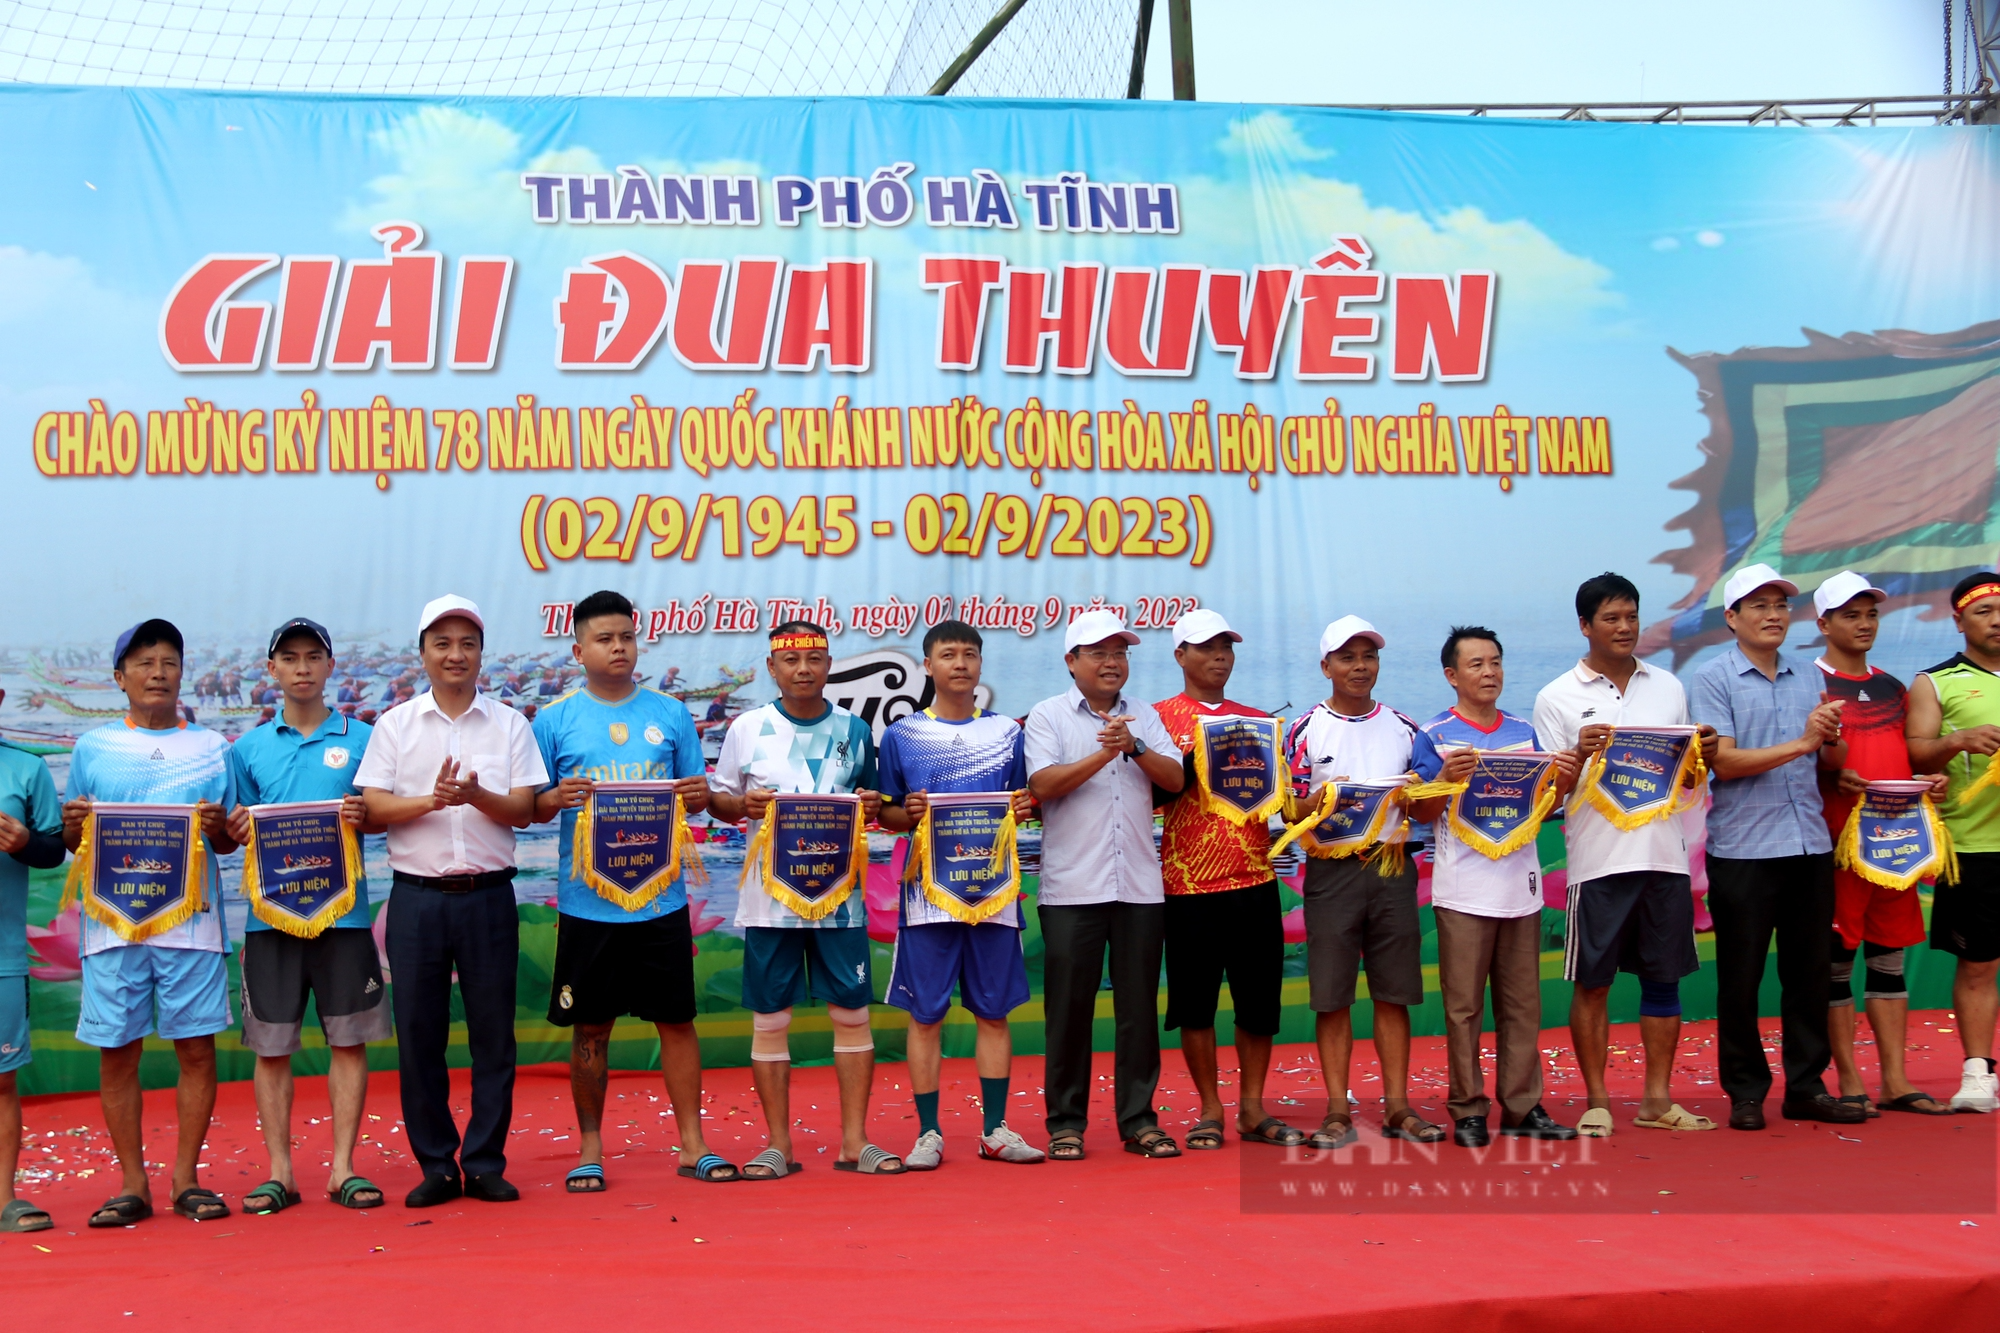 Hà Tĩnh: Sôi động lễ hội đua thuyền truyền thống trên sông Rào Cái trong ngày Tết Độc lập - Ảnh 4.